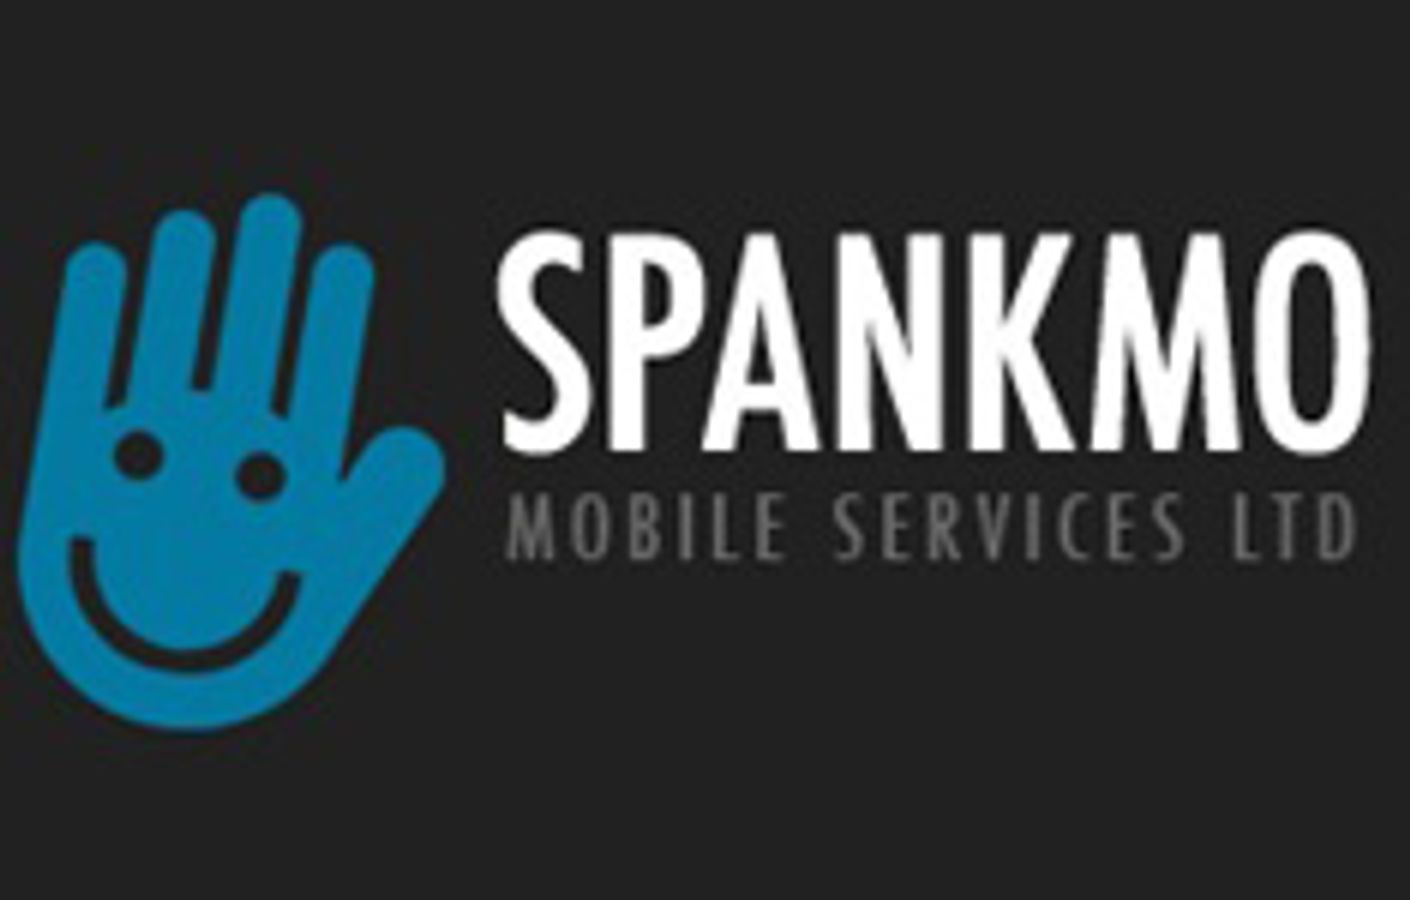 Spankmo Mobile Services Ltd.